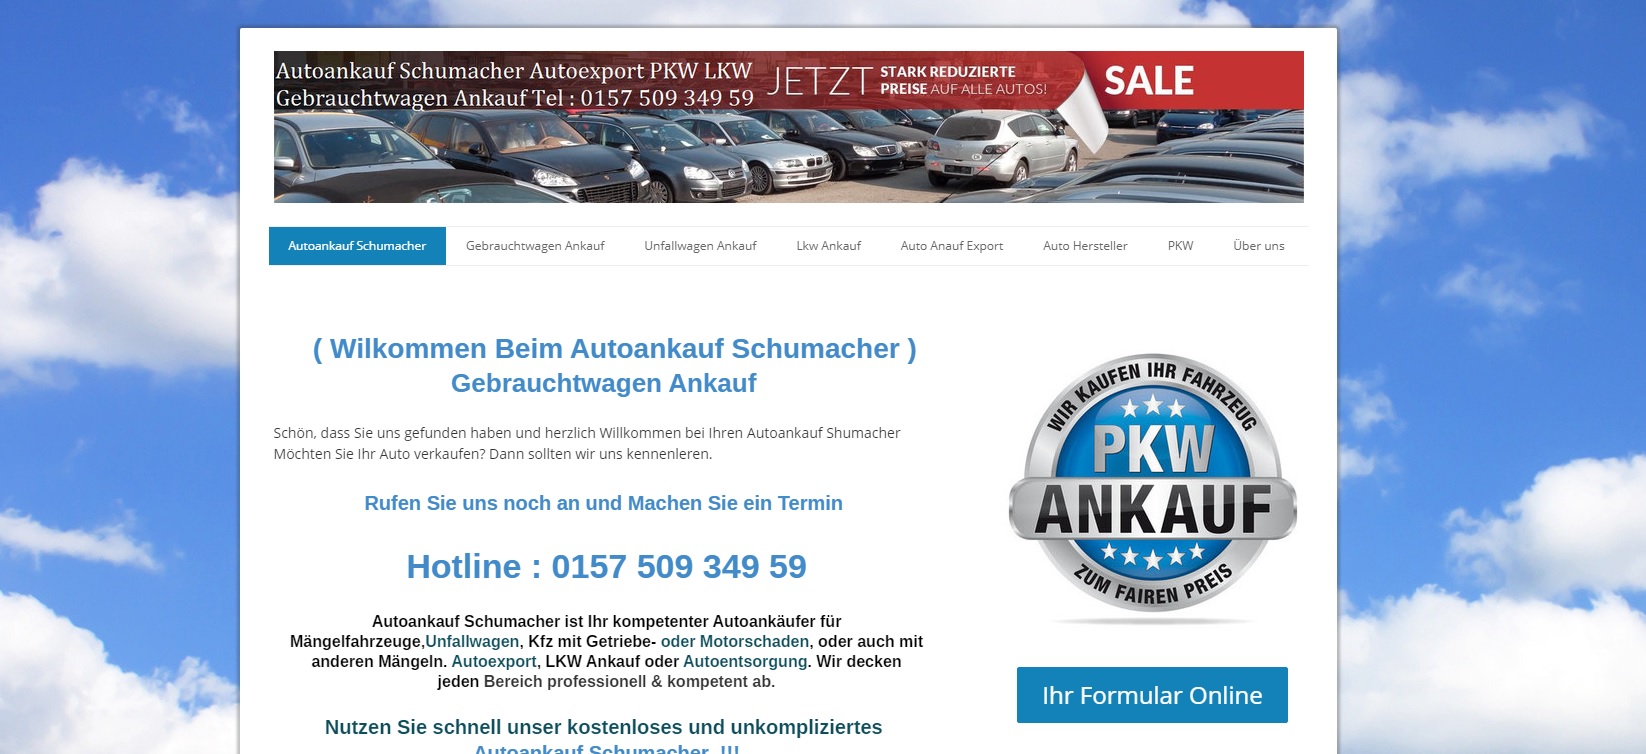 autoankauf luedenscheid kauft alle kfz - Autoankauf Lüdenscheid kauft Alle Kfz